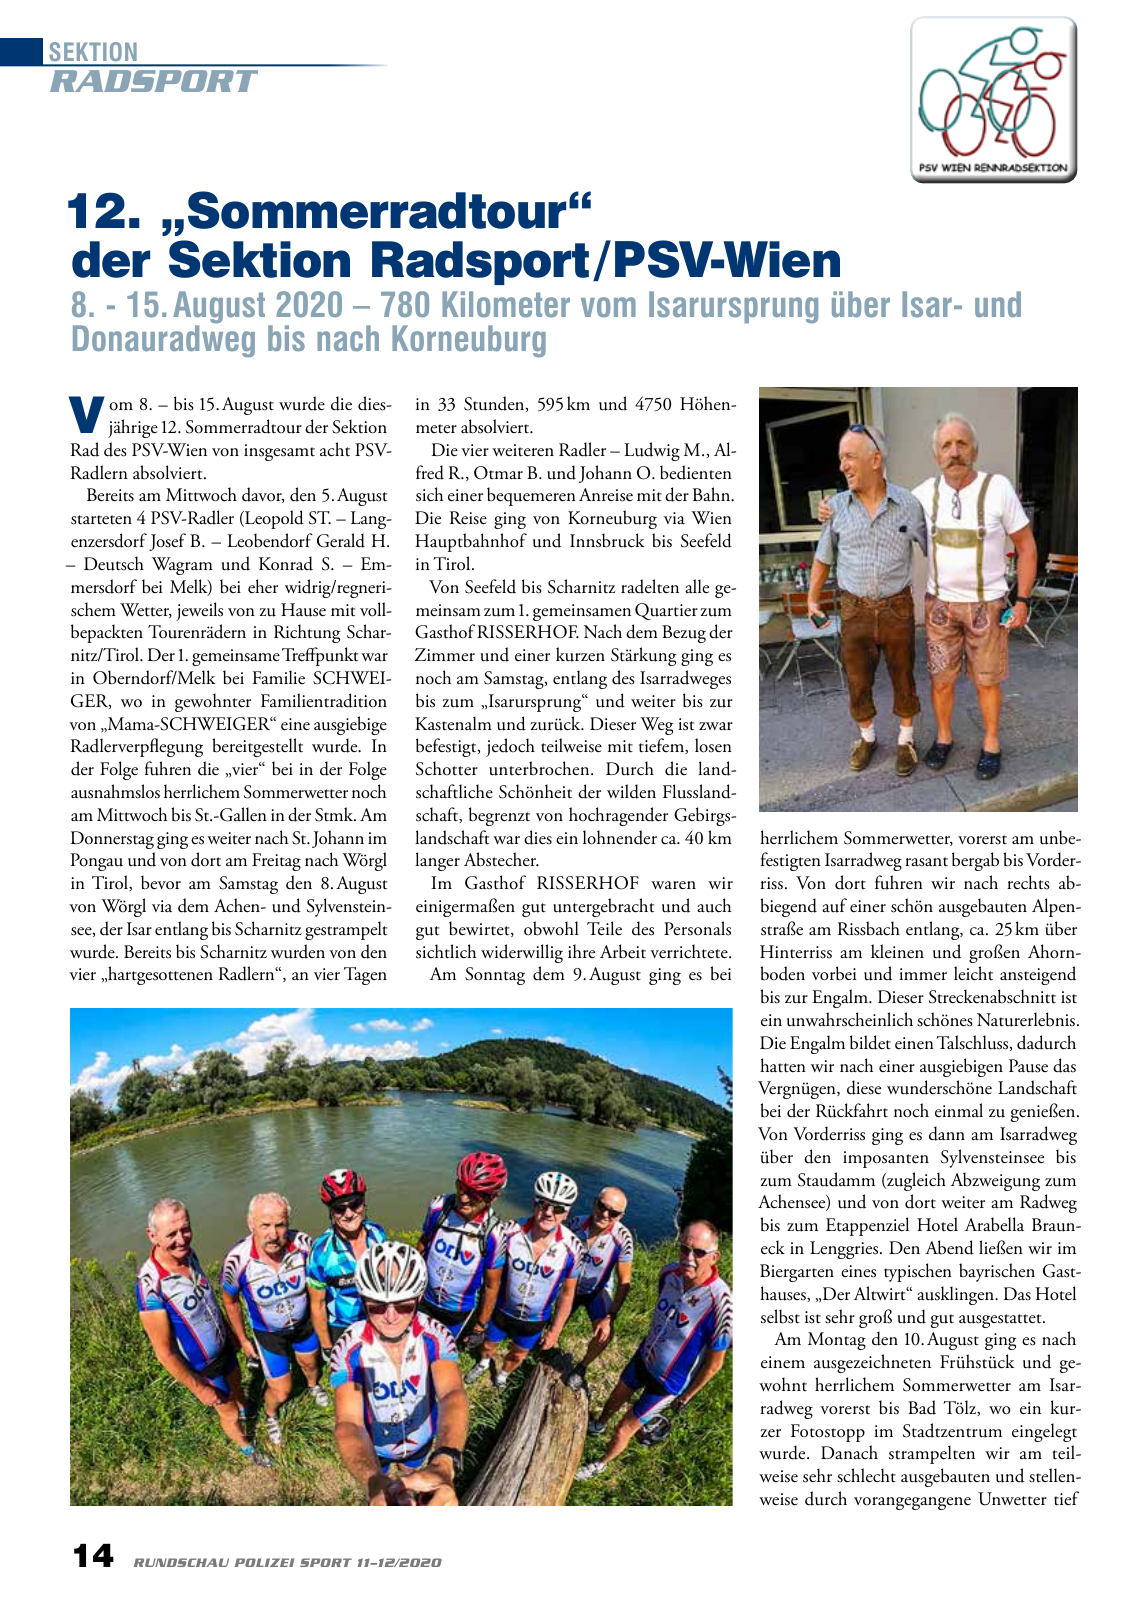 Vorschau Rundschau Polizei Sport 11-12/2020 Seite 14